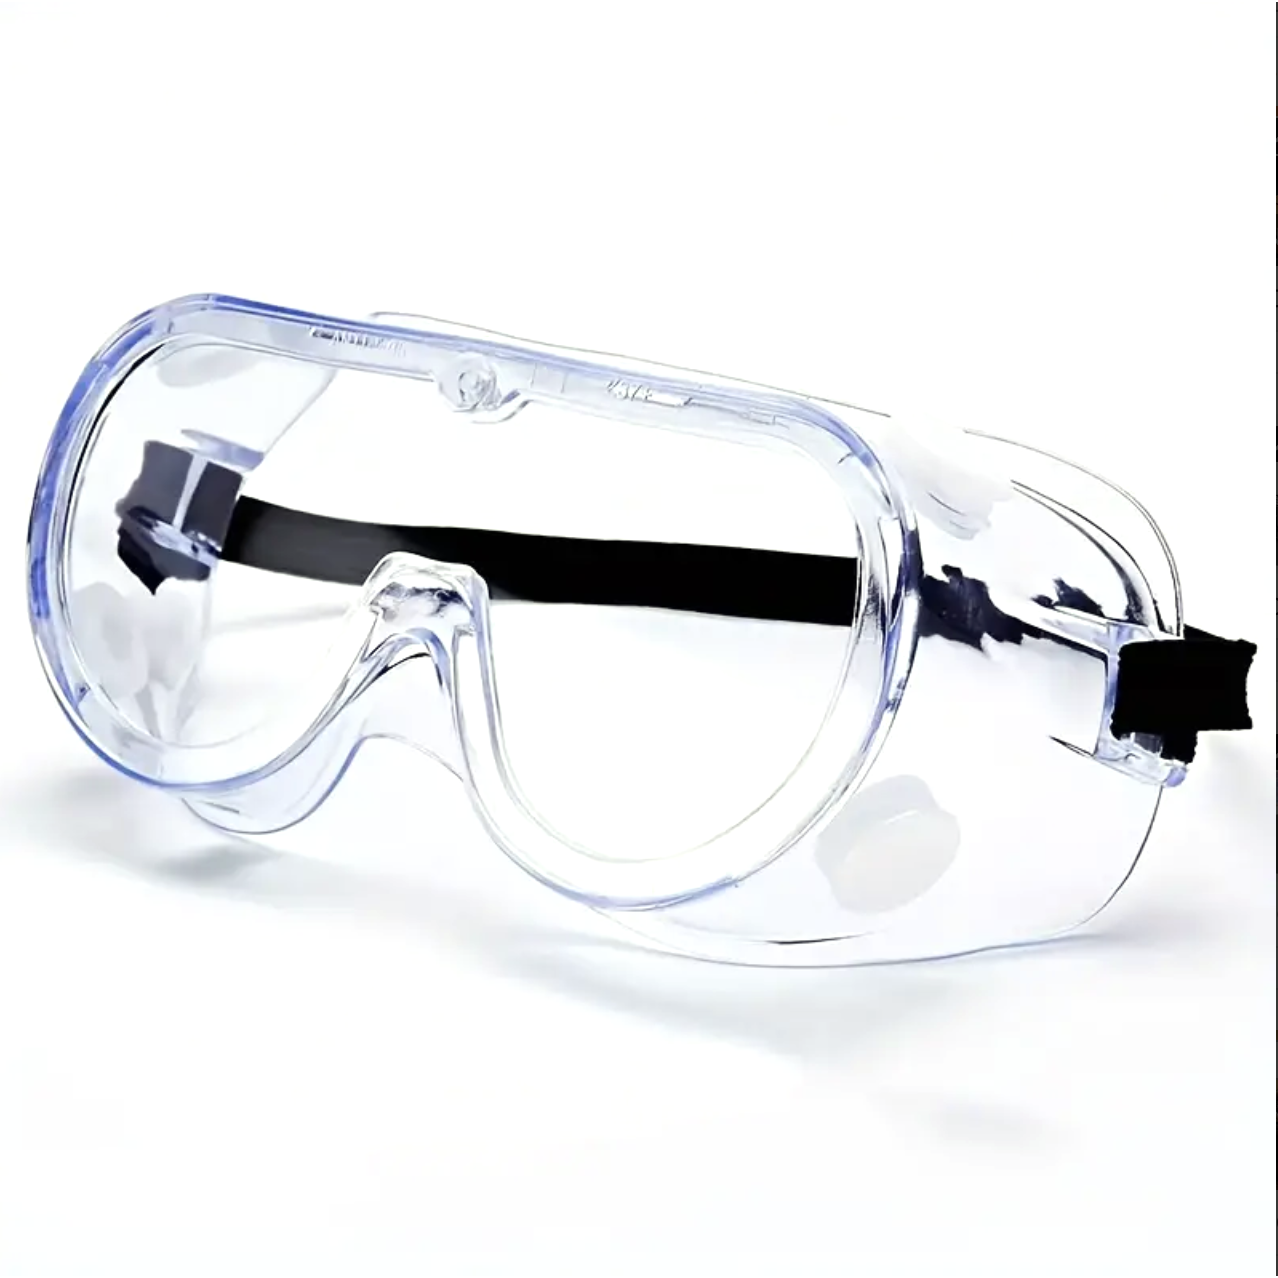 Laborbrille | Schutzbrille für Parties Party Owl Supplies bei Deinparadies.ch